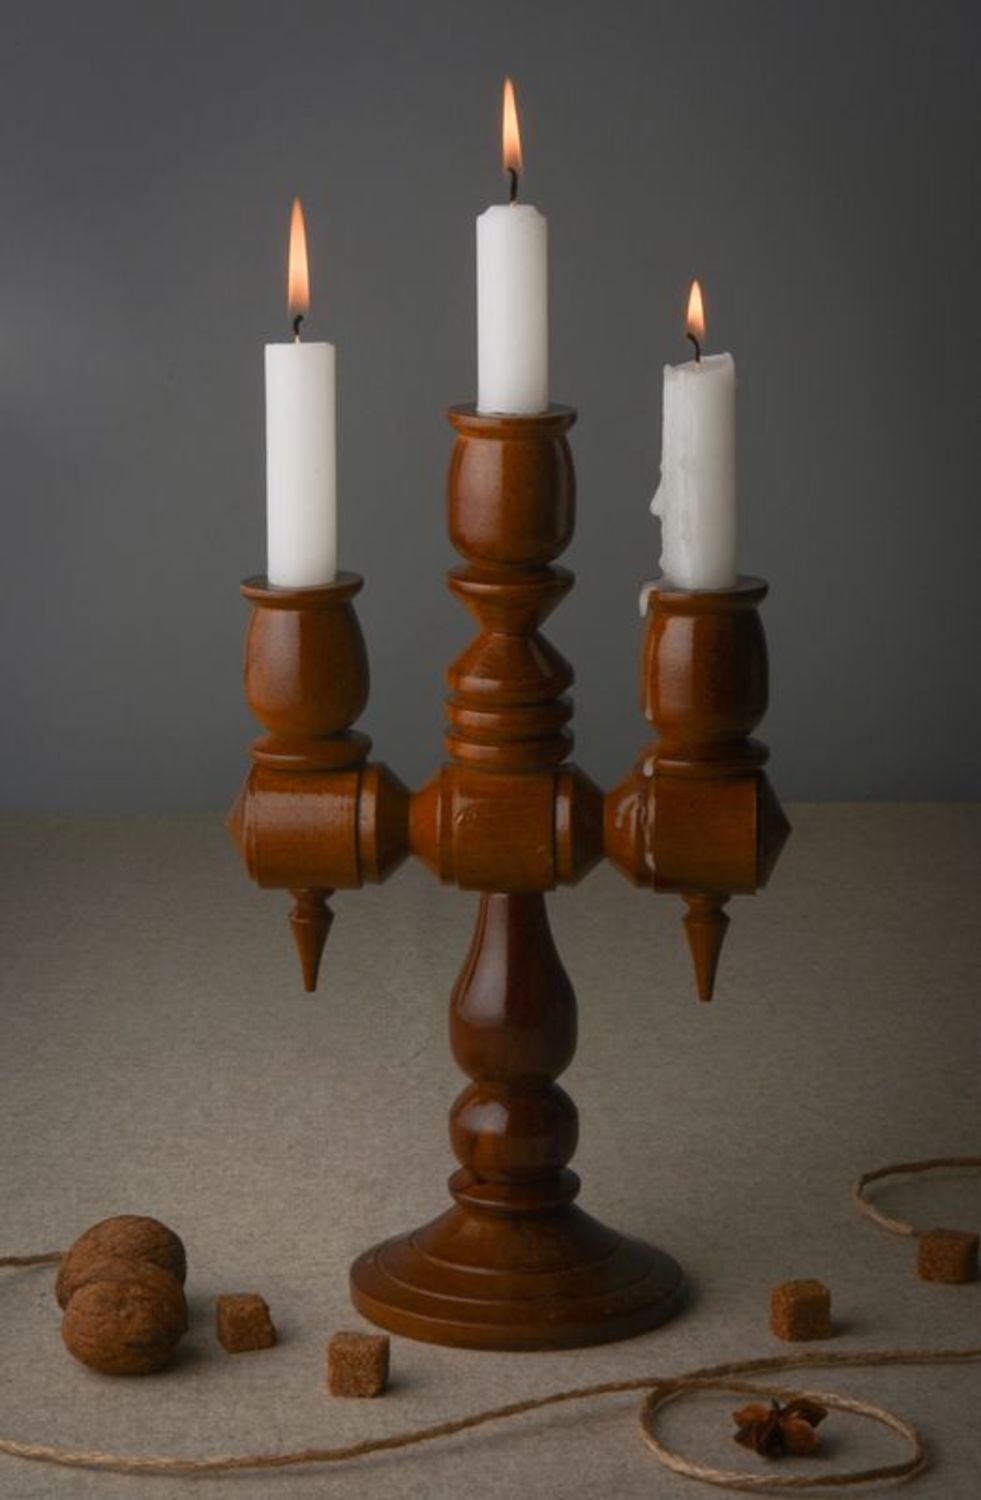 Chandelier de bois à trois bougies photo 1